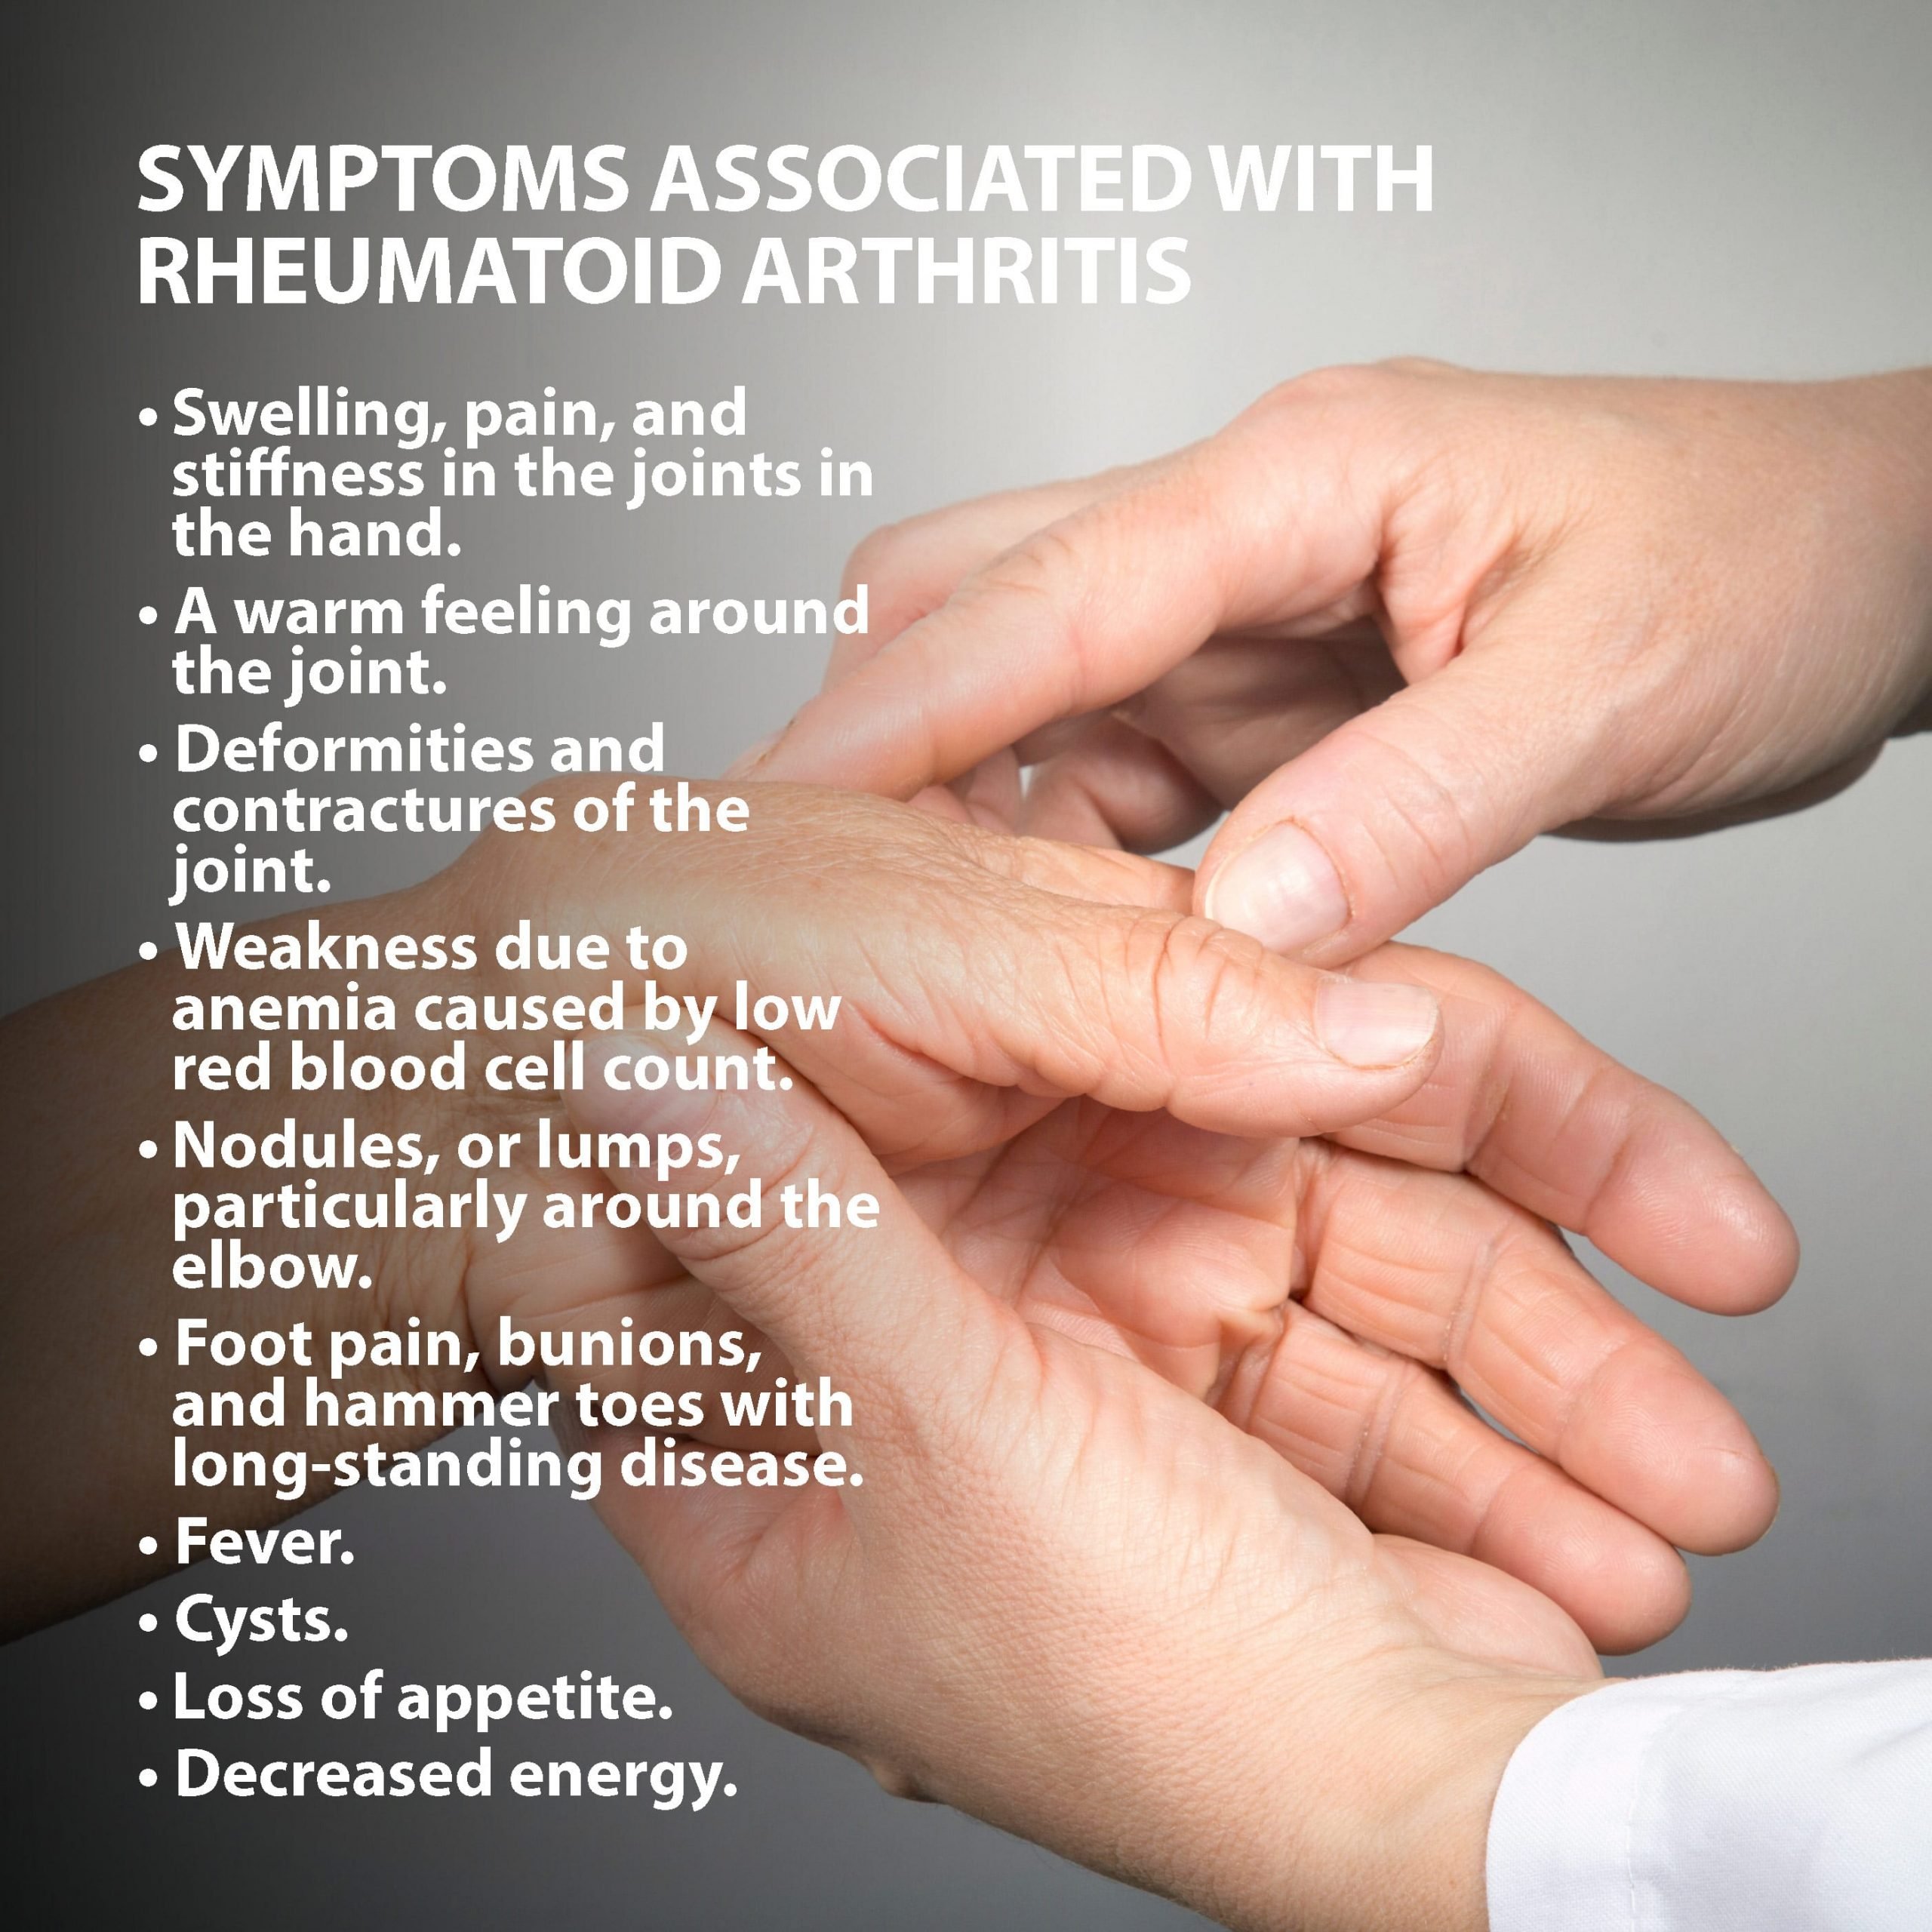 Rheumatoid Arthritis Of The Hand